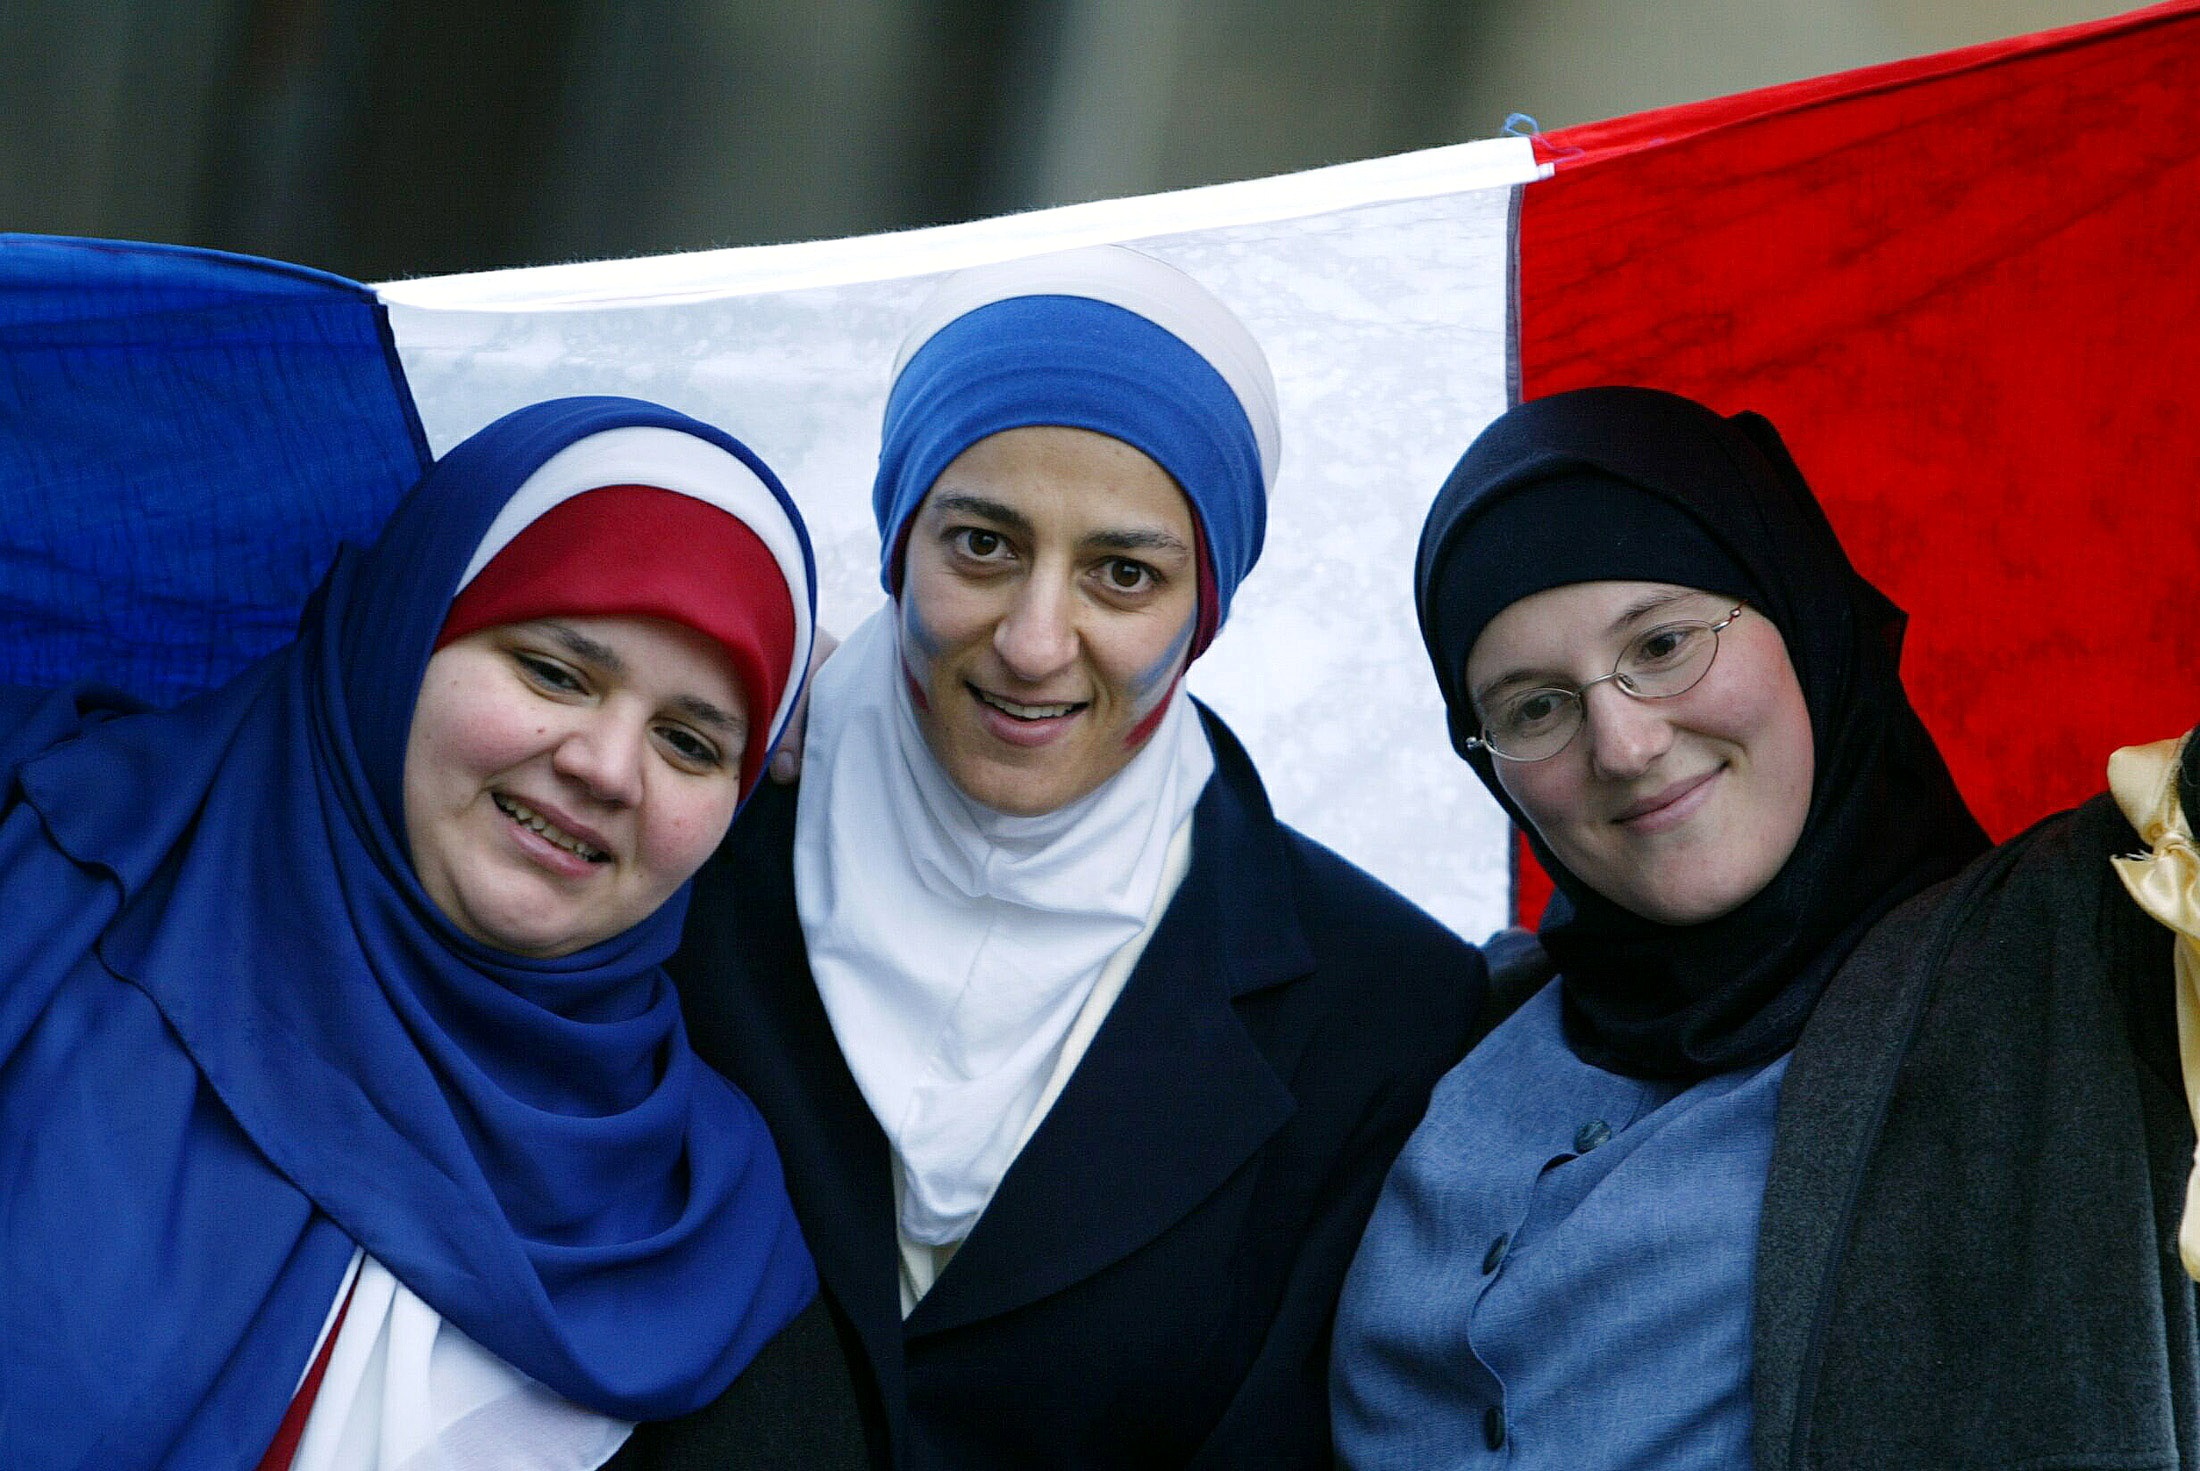 المسلمون يتدفّقون إلى أوروبا غير المهيّأة فكريّاً وروحيّاً، بعضٌ من مواطنيها يتعاملون معهم ببغض وجهالة متطرفة. (رويترز)